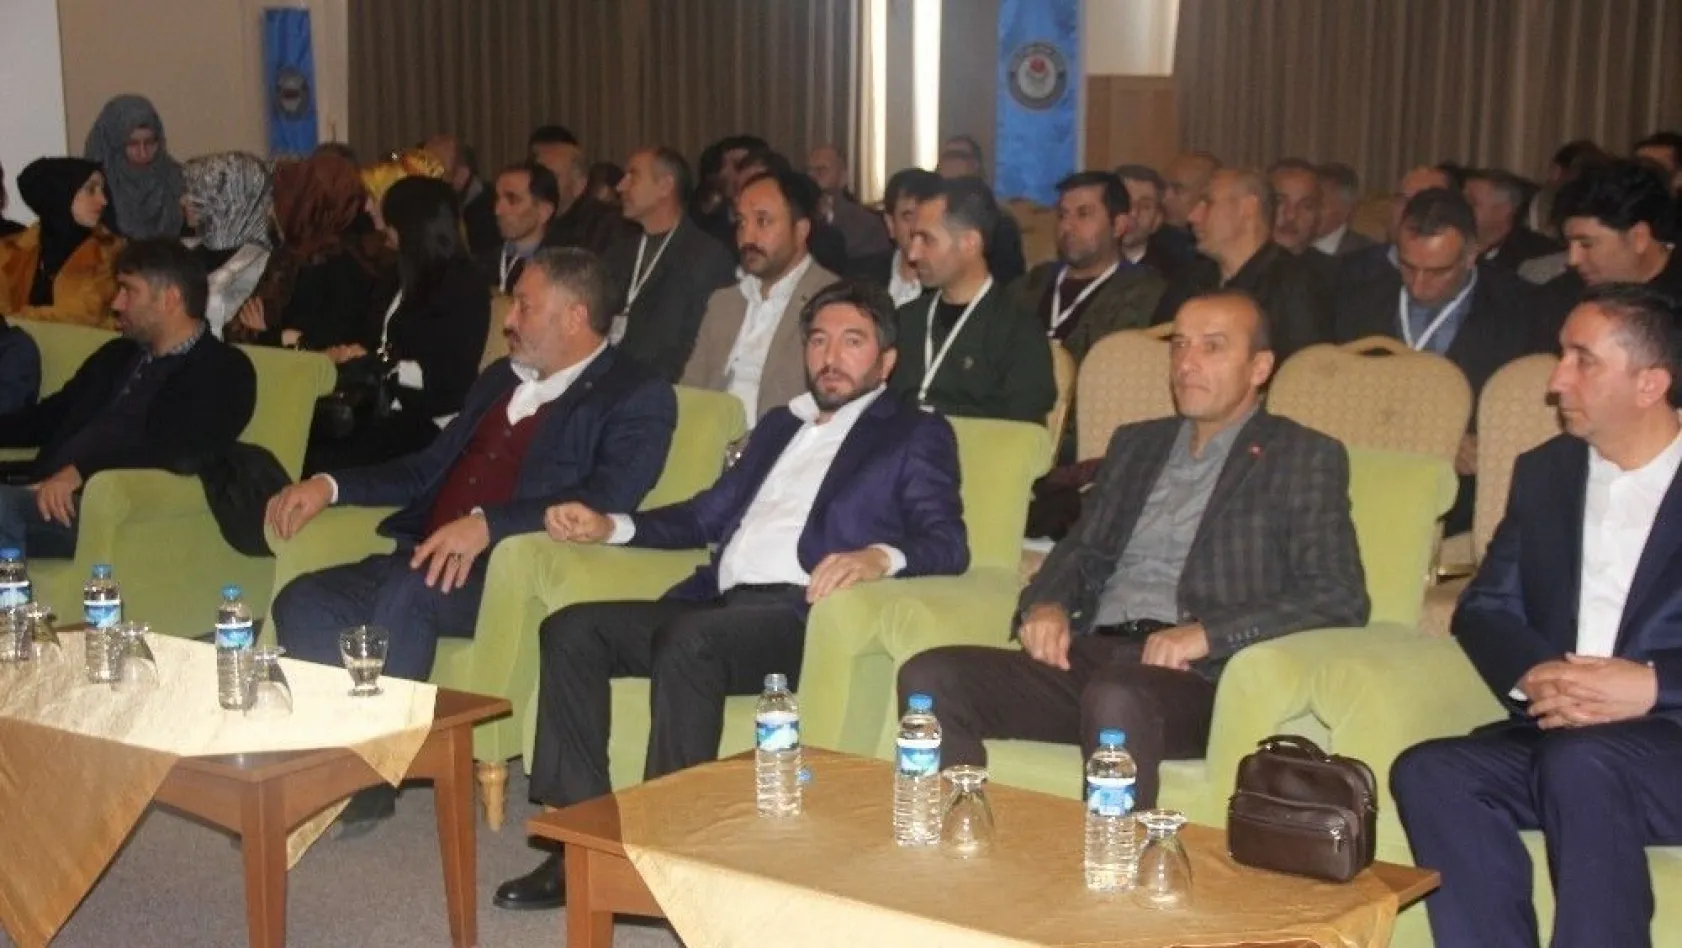 Eğitim-Bir-Sen Erzurum 2 Nolu Şube Başkanı Karataş, güven tazeledi
